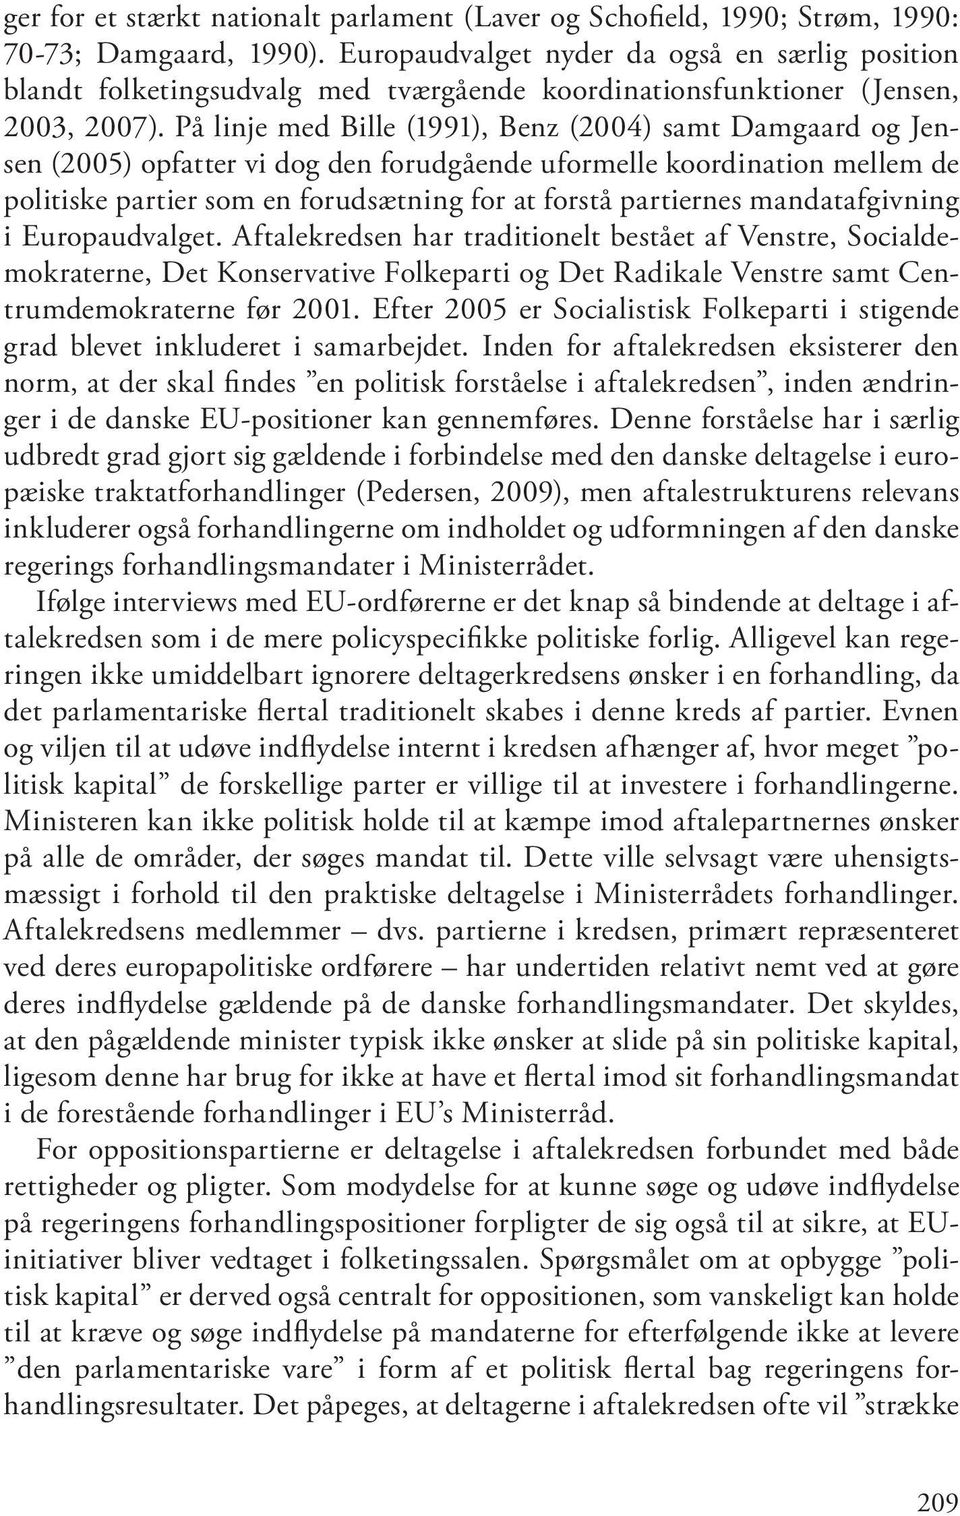 På linje med Bille (1991), Benz (2004) samt Damgaard og Jensen (2005) opfatter vi dog den forudgående uformelle koordination mellem de politiske partier som en forudsætning for at forstå partiernes